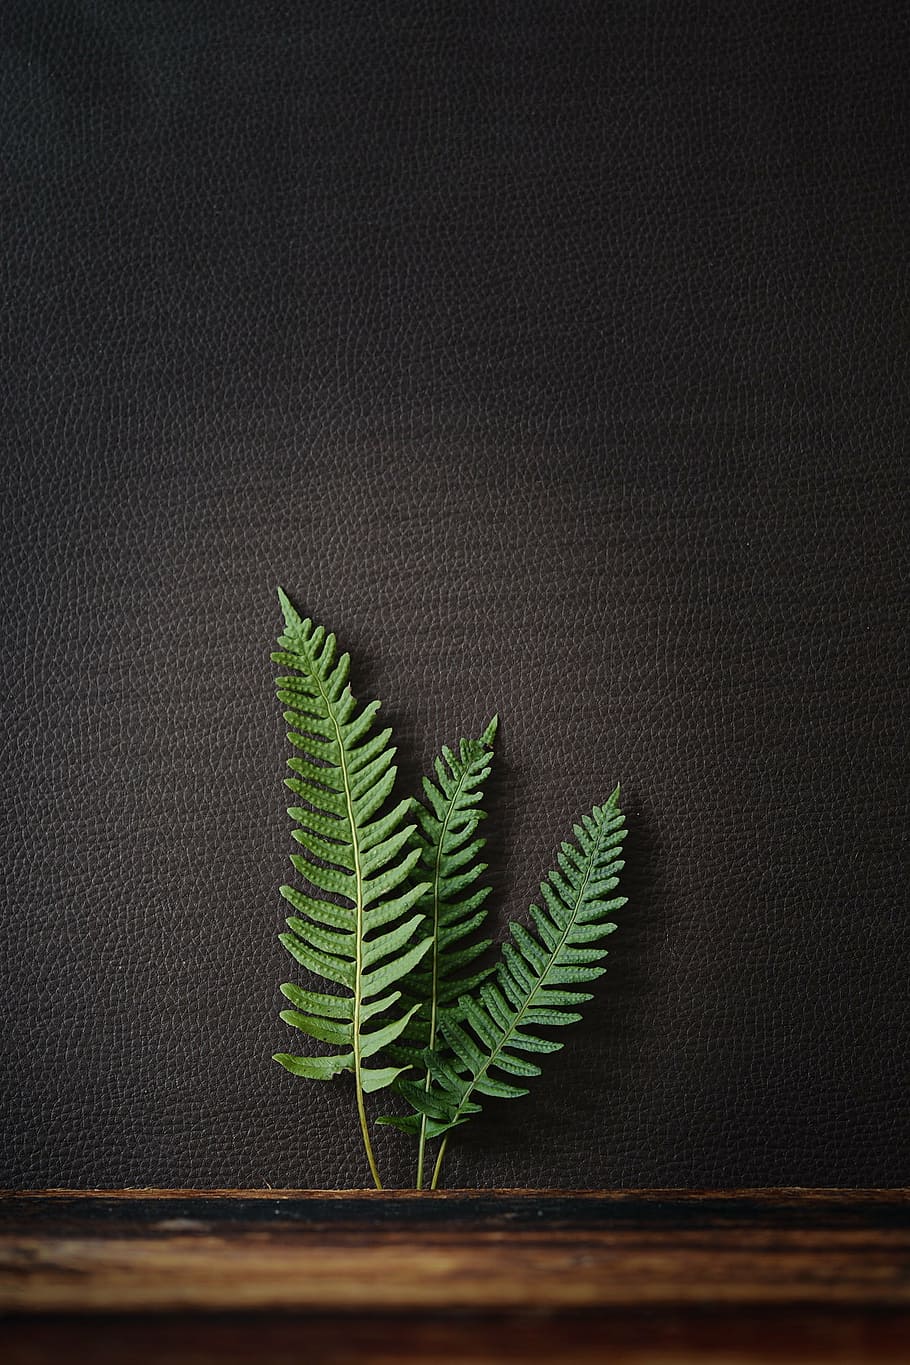 tres, verde, hoja de helecho, negro, foto de primer plano de superficie de cuero, helecho, planta, naturaleza, planta de helecho, hojas